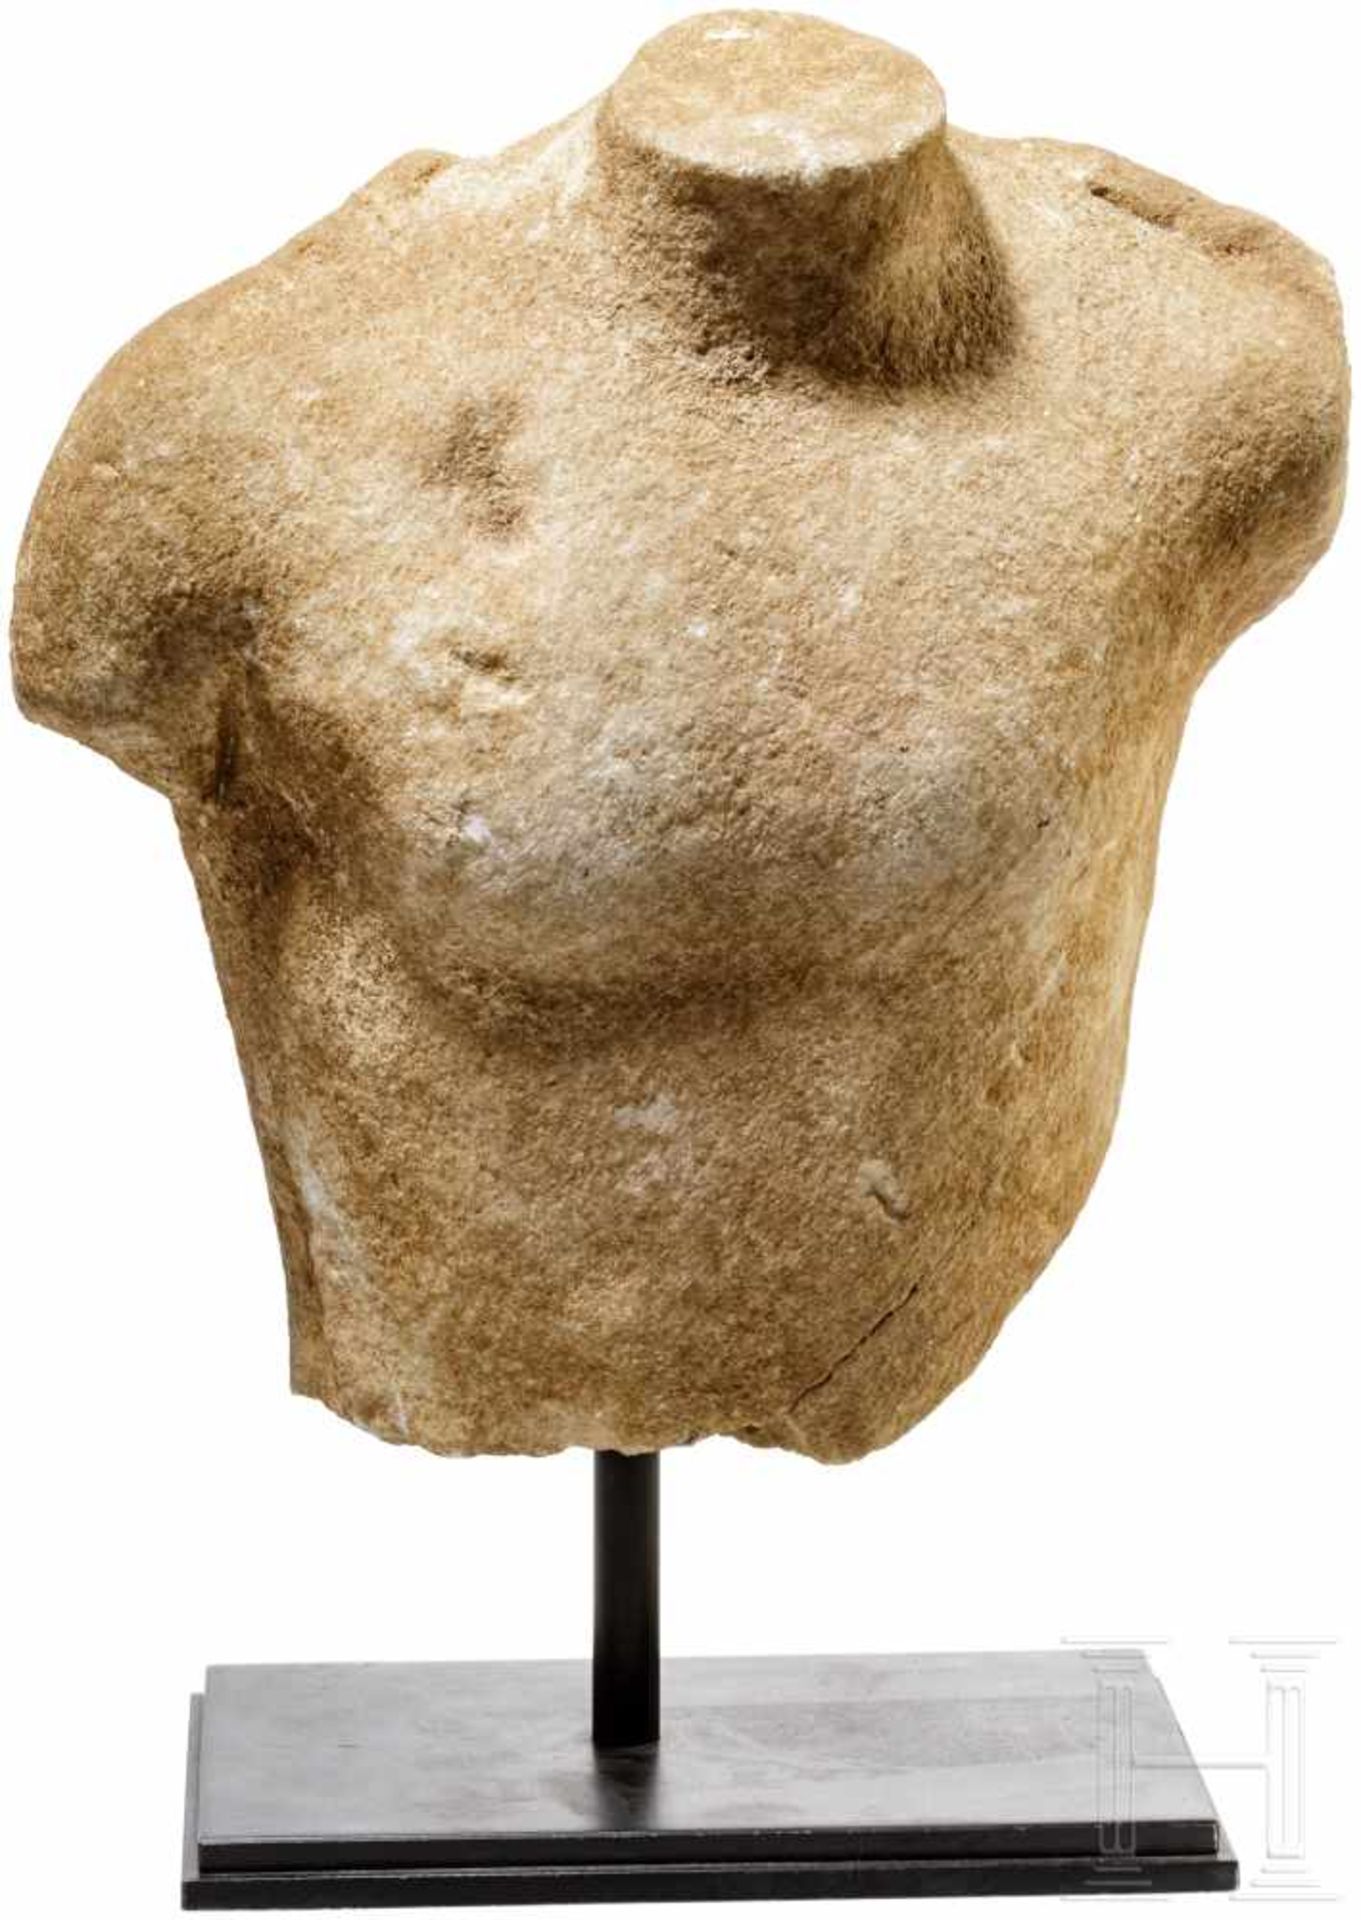 Marmortorso des Dionysos, Griechenland, frühes 5. Jhdt. v. Chr.Oberkörper einer frühklassischen